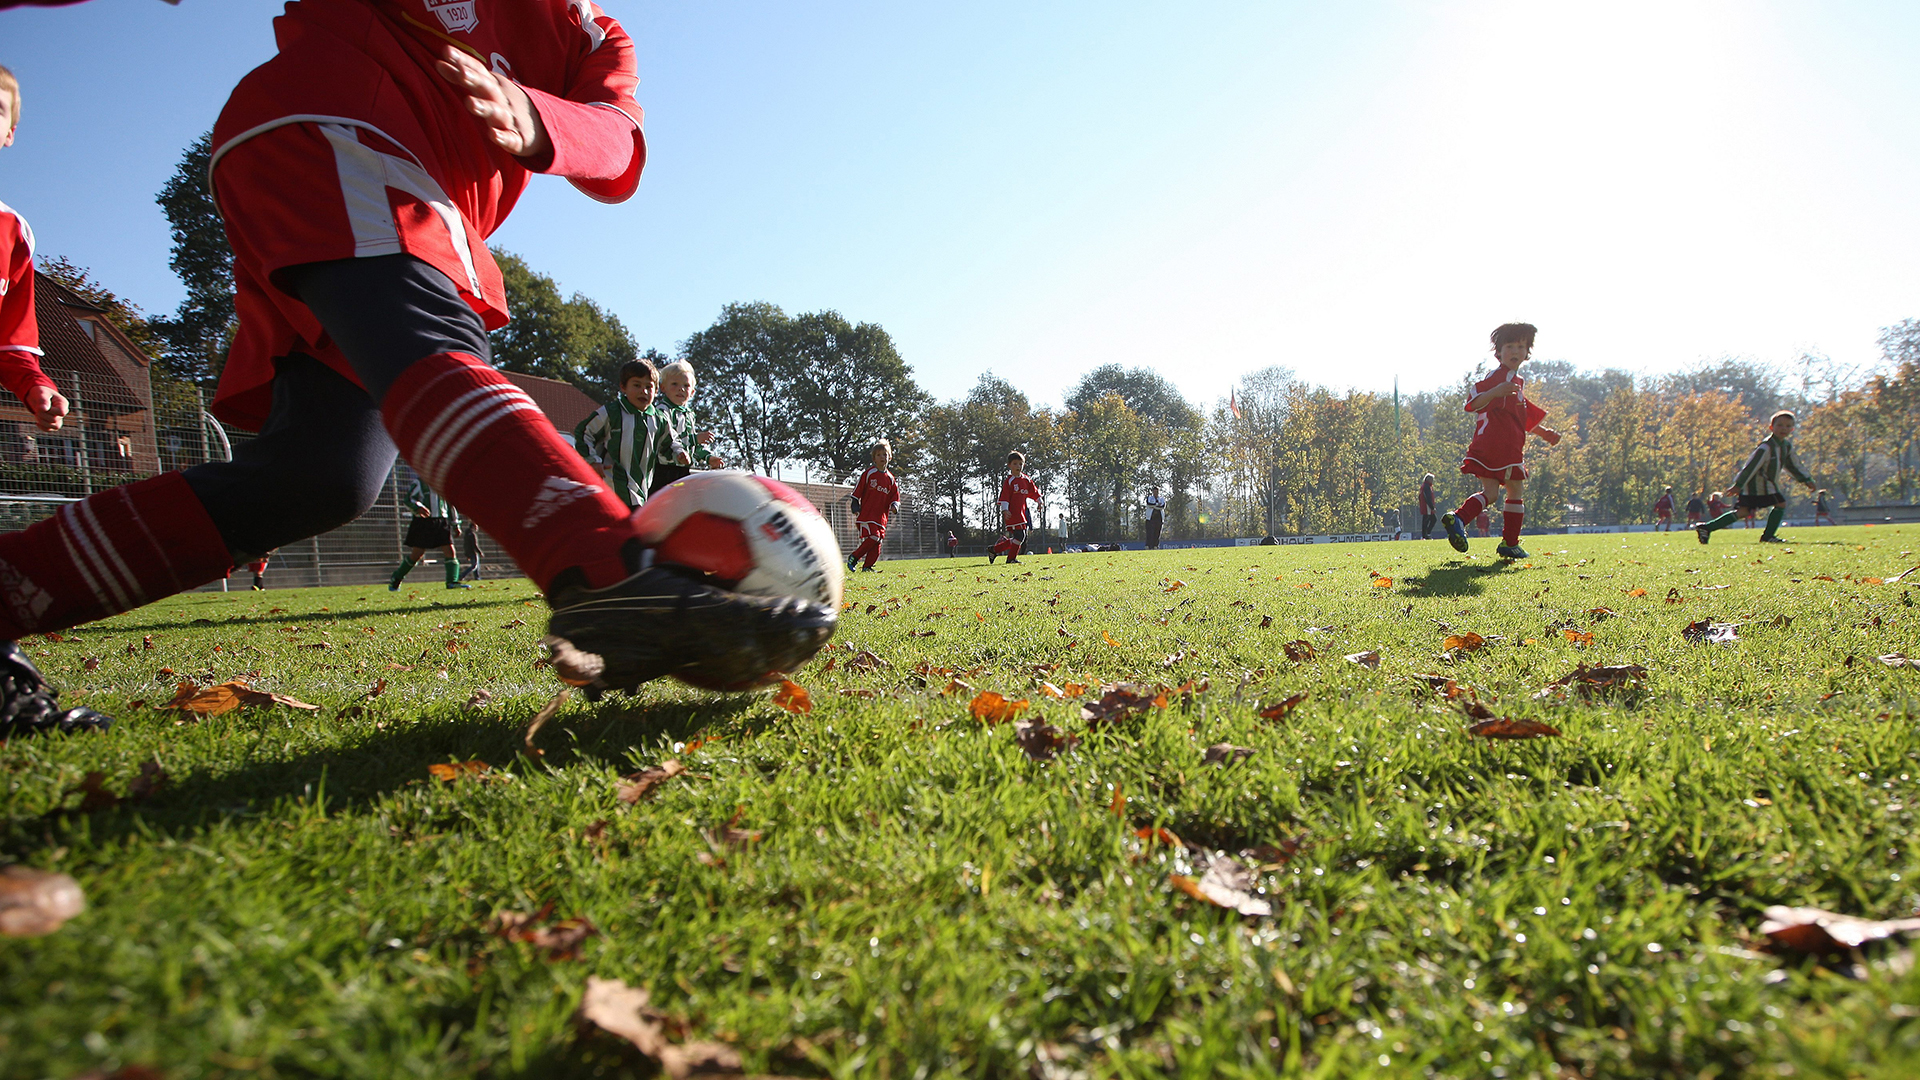 Kinder spielen Fußball auf einem Sportplatz. | picture alliance / augenklick/fi